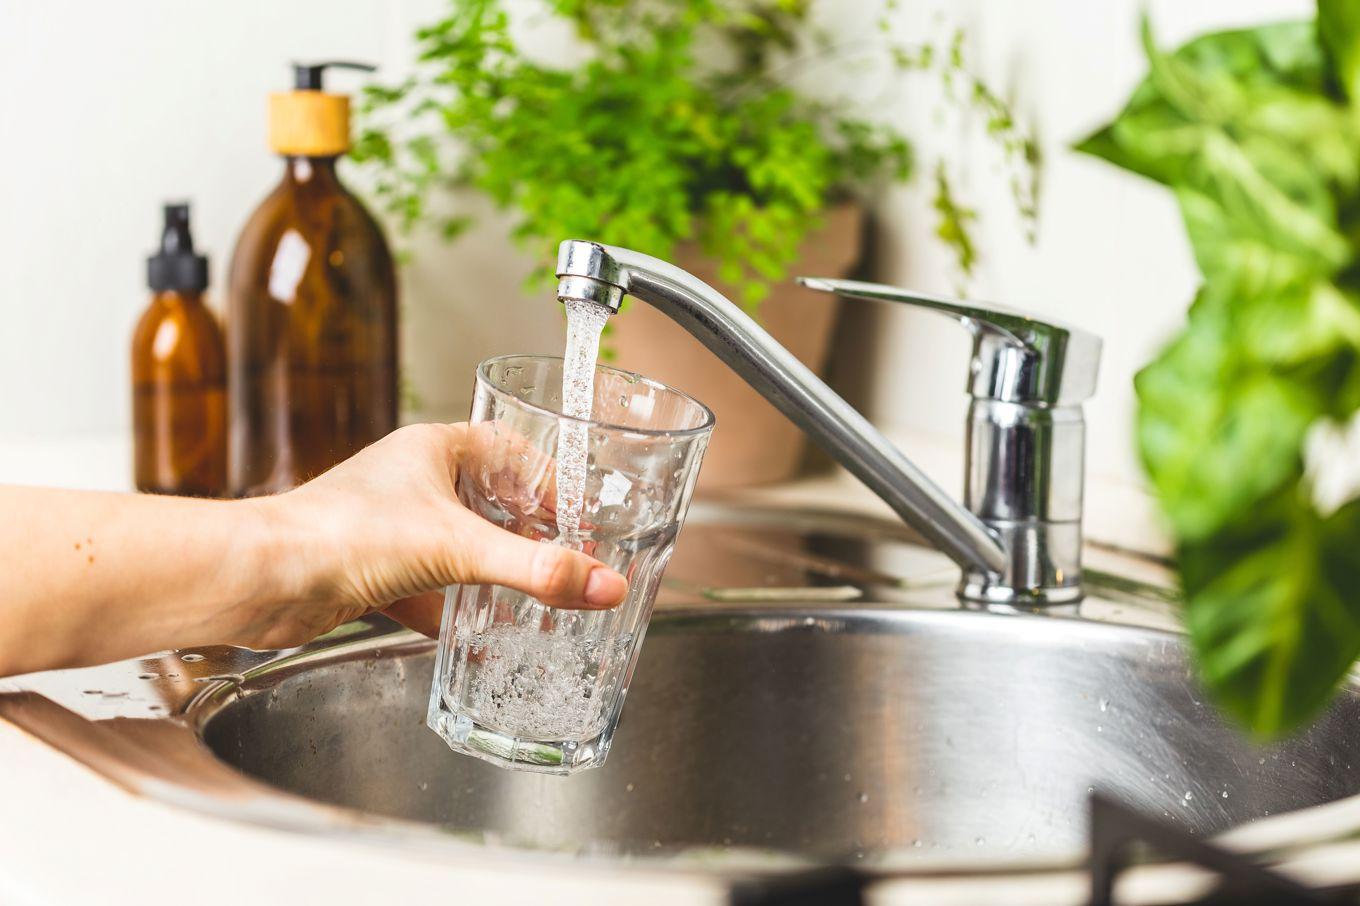 Omkring två miljoner svenskar får sitt dricksvatten från egen brunn eller annan liten dricksvattenanläggning för privat bruk. Foto: Andriana Syvanych/Shutterstock